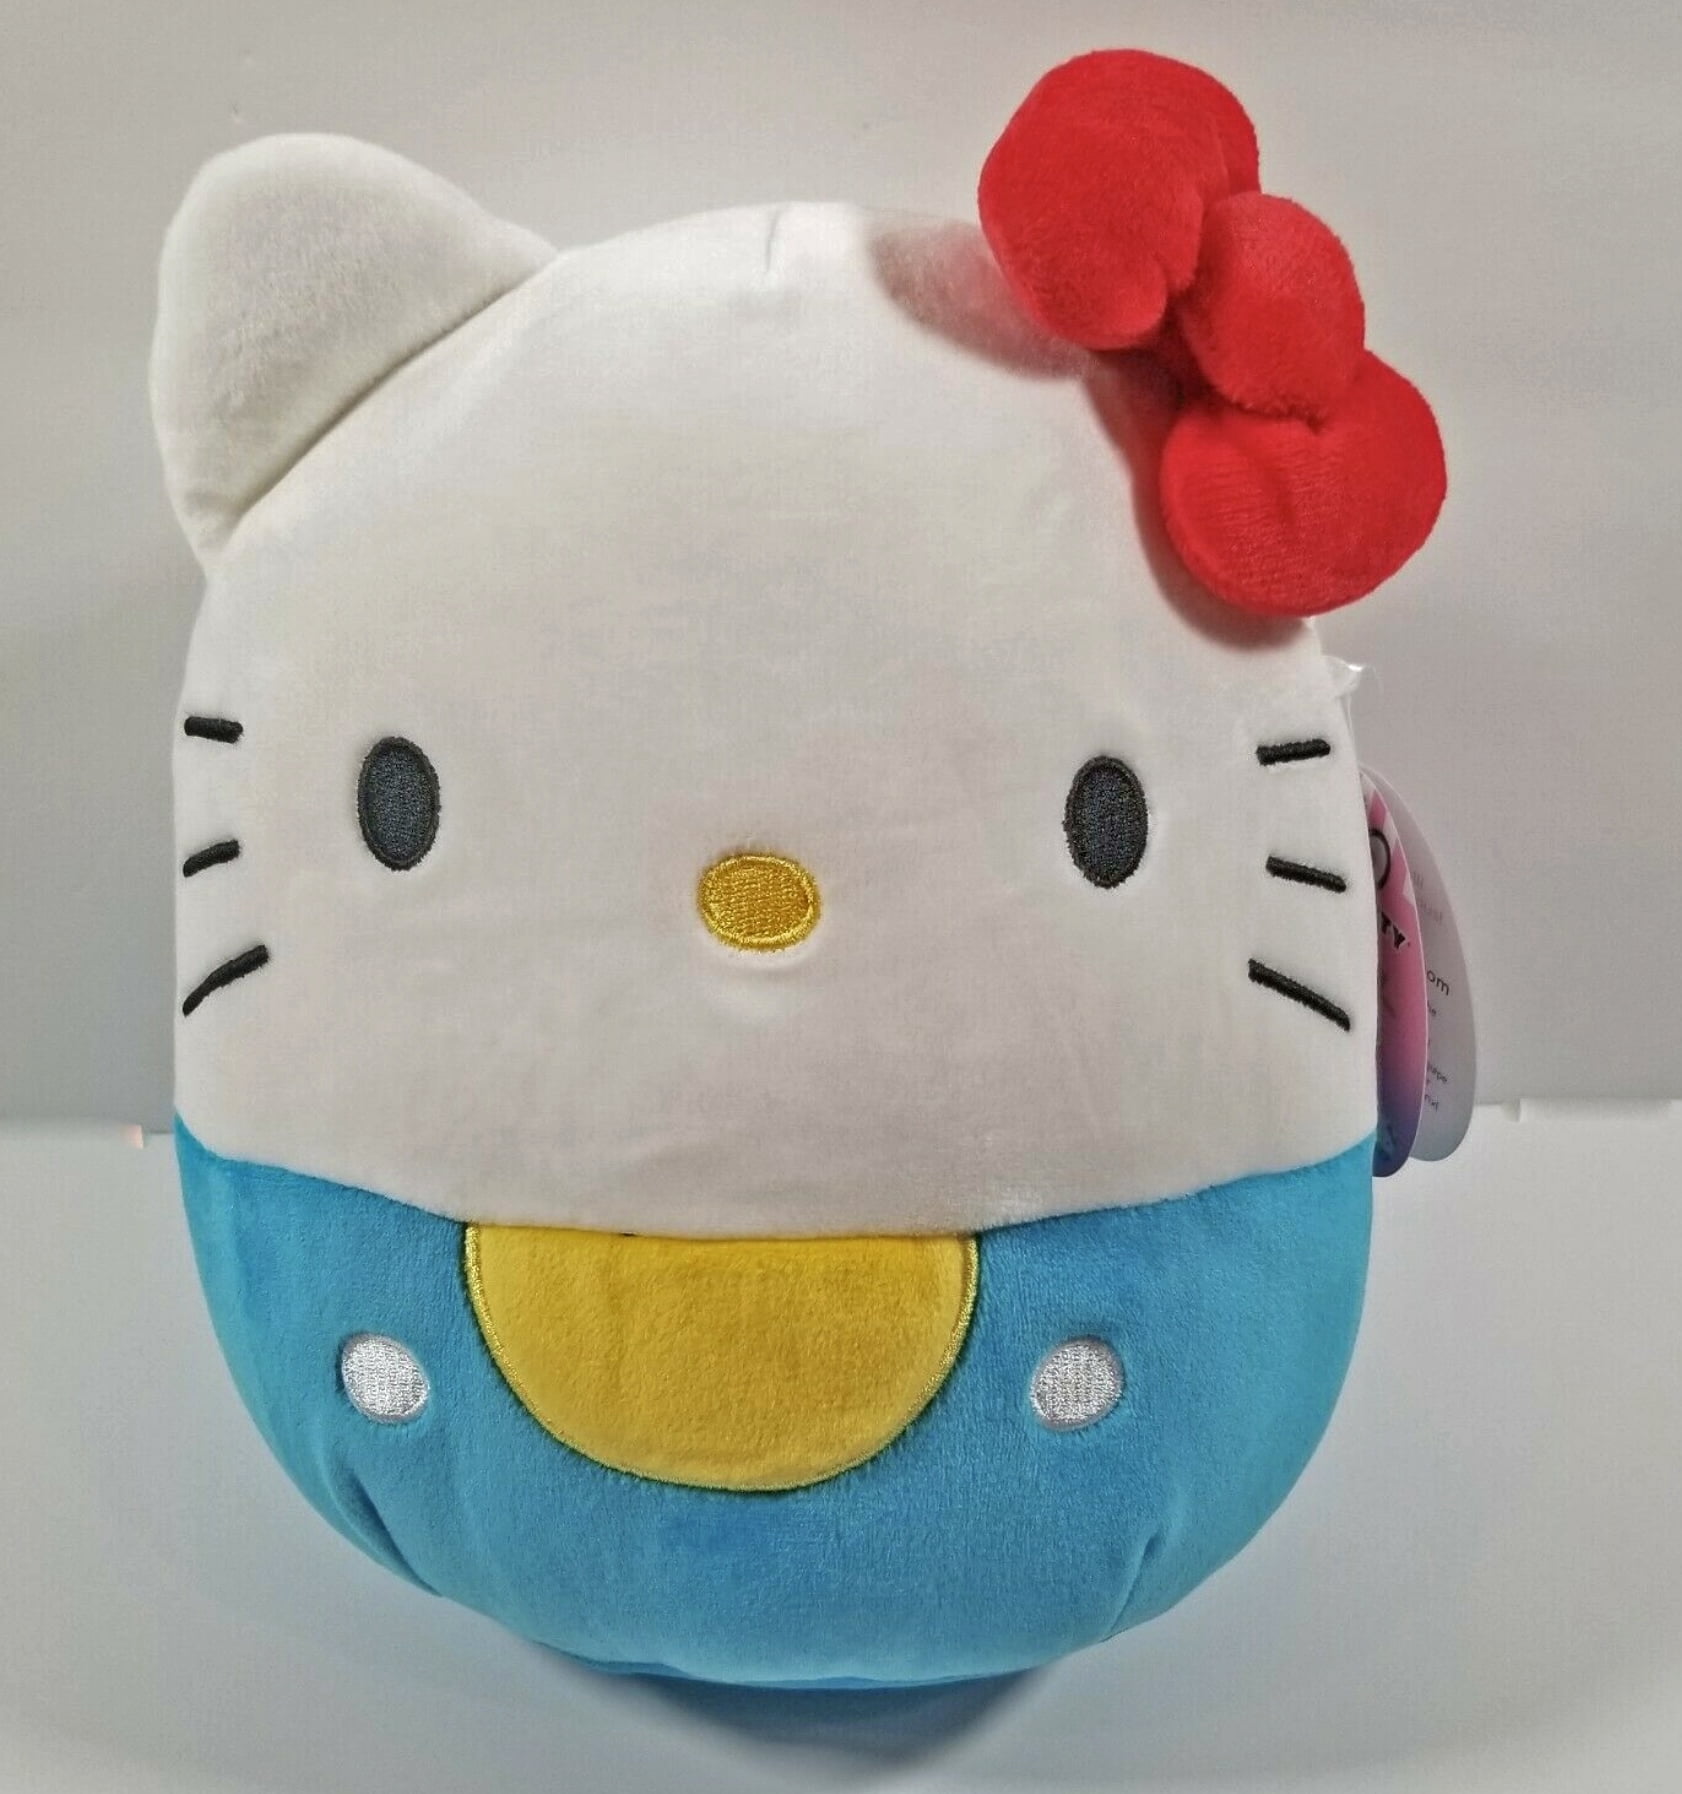 Squishmallow Hello Kitty Plush Toys Kellytoy 8in Set of 2 Sanrio for sale online 